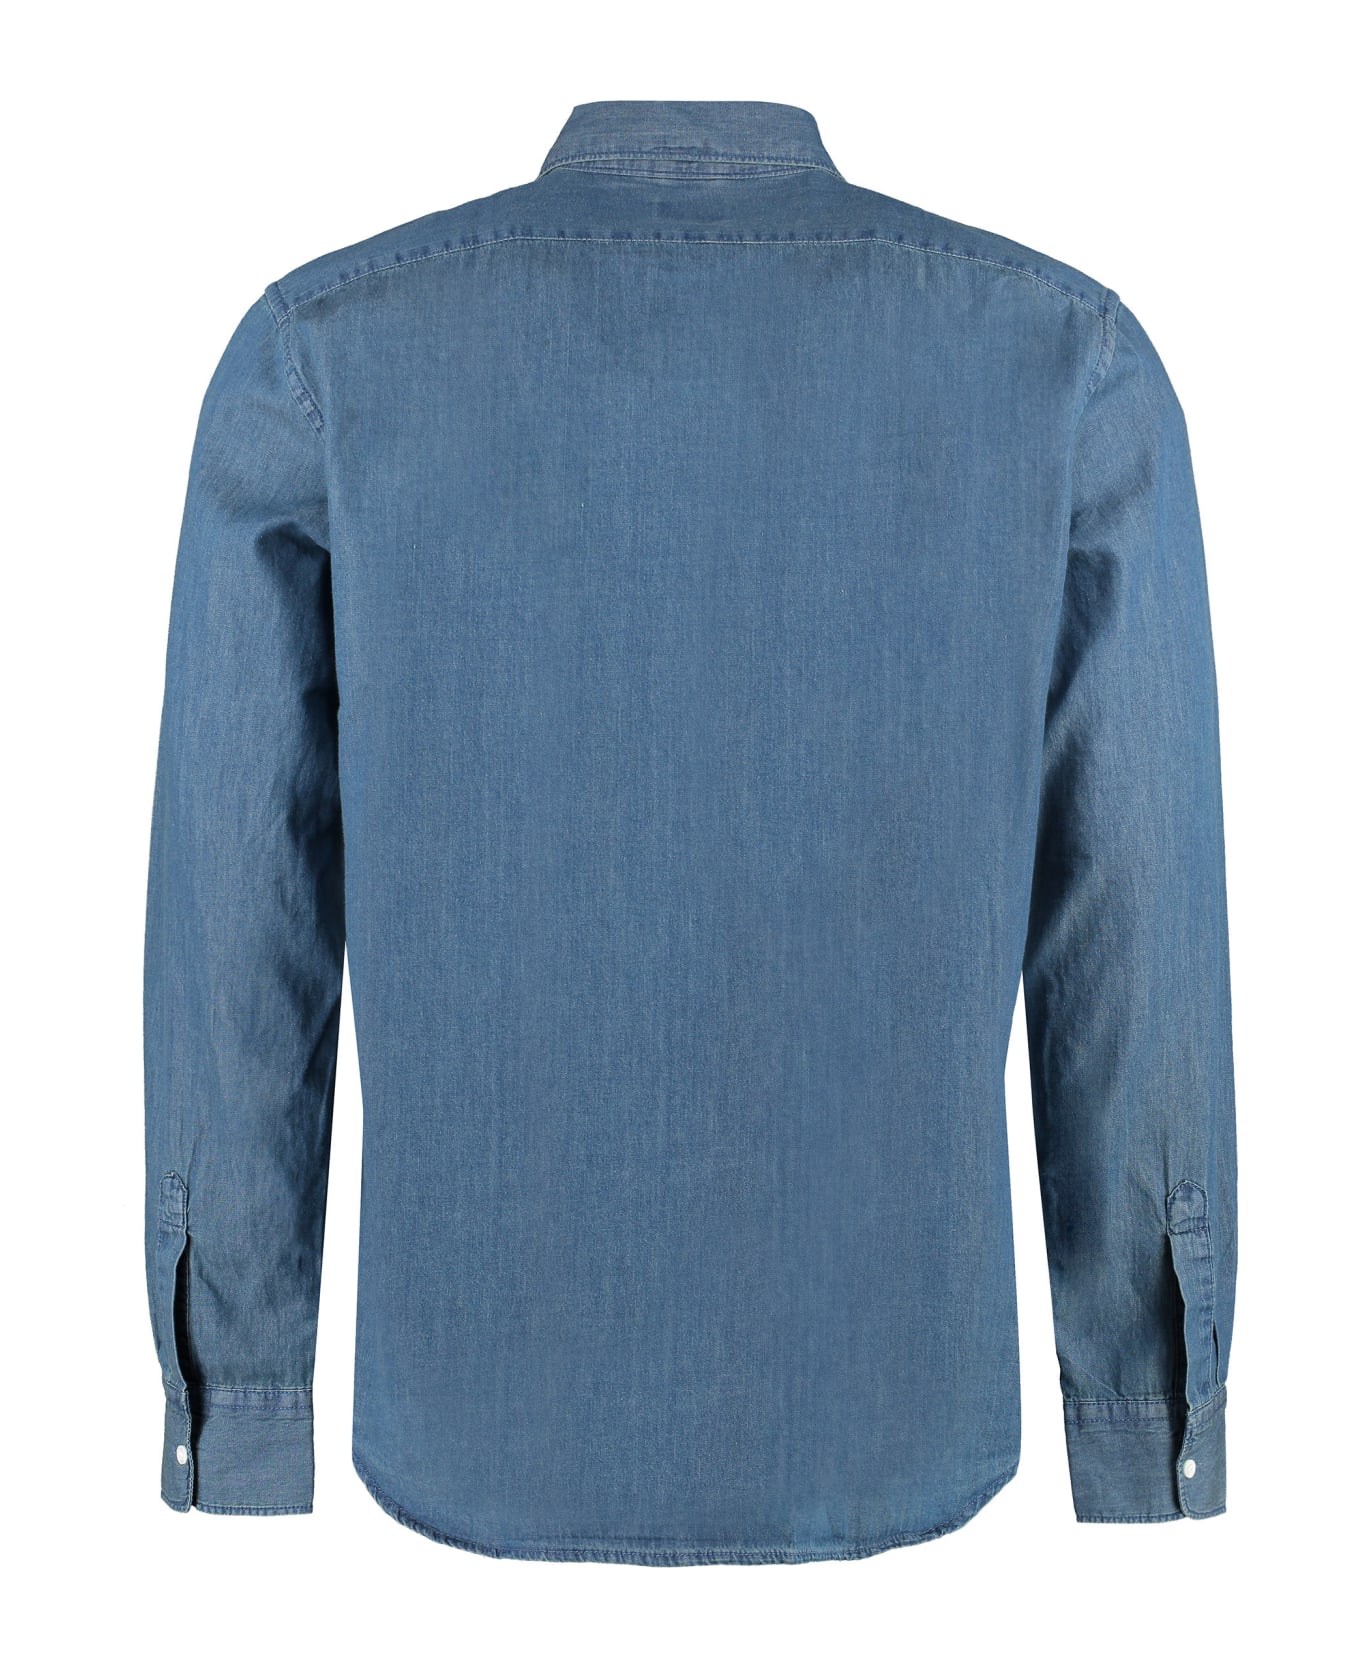 Aspesi Denim Shirt - Blue